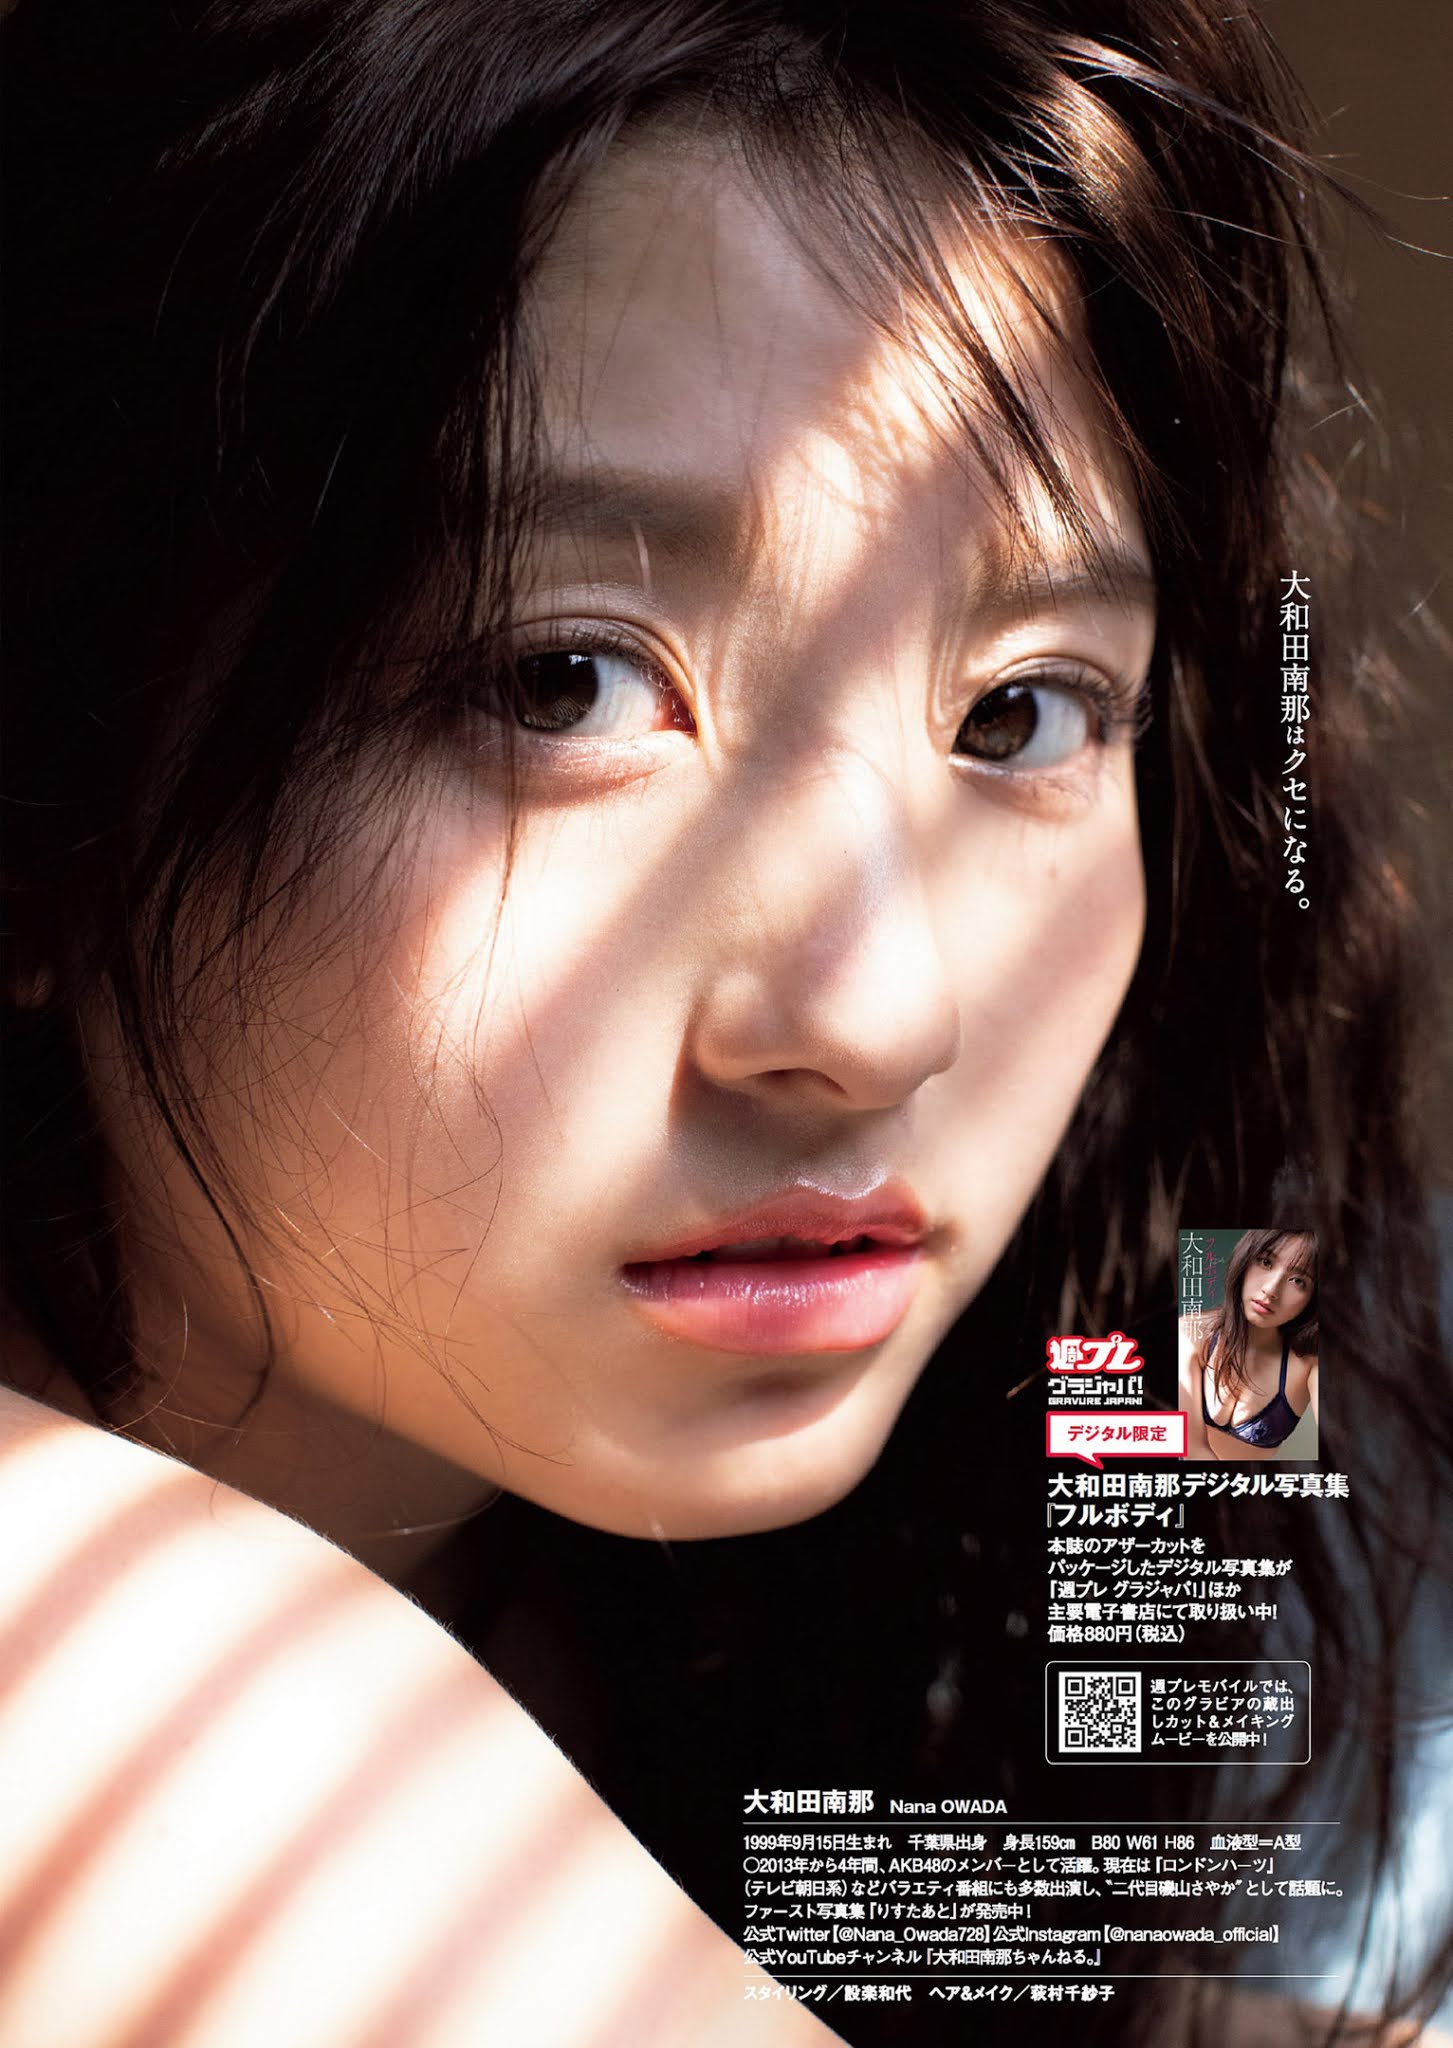 Nana Owada 大和田南那, Weekly Playboy 2021 No.01-02 (週刊プレイボーイ 2021年1-2号)